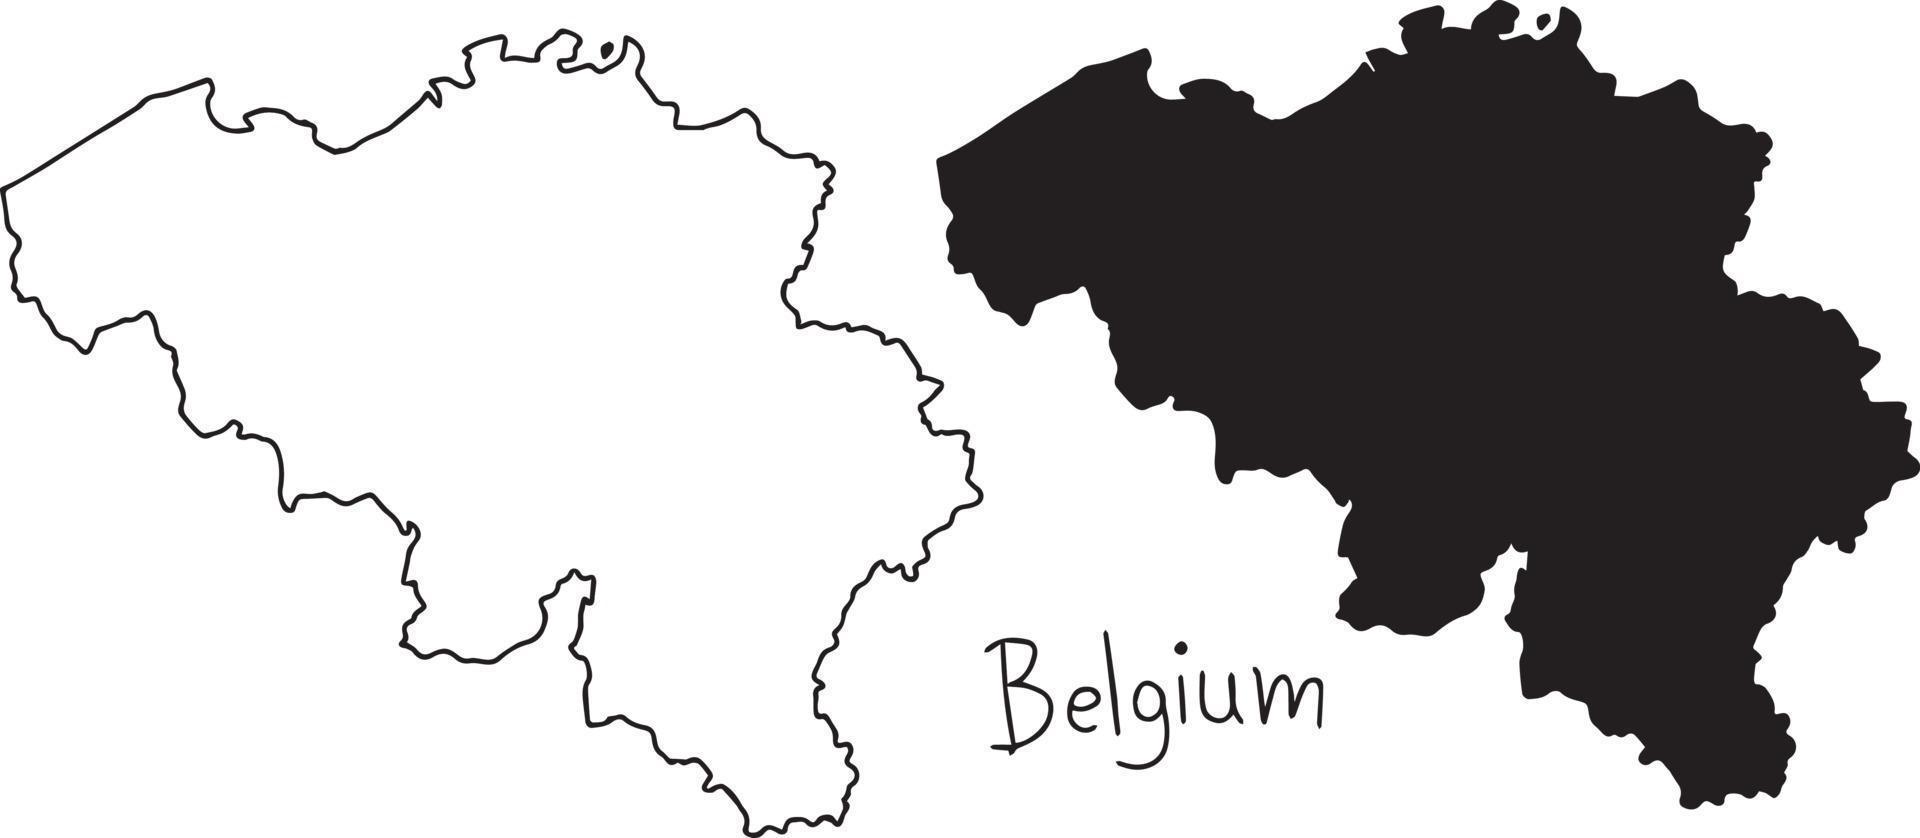 Contours et carte de la silhouette de la Belgique - vector illustration